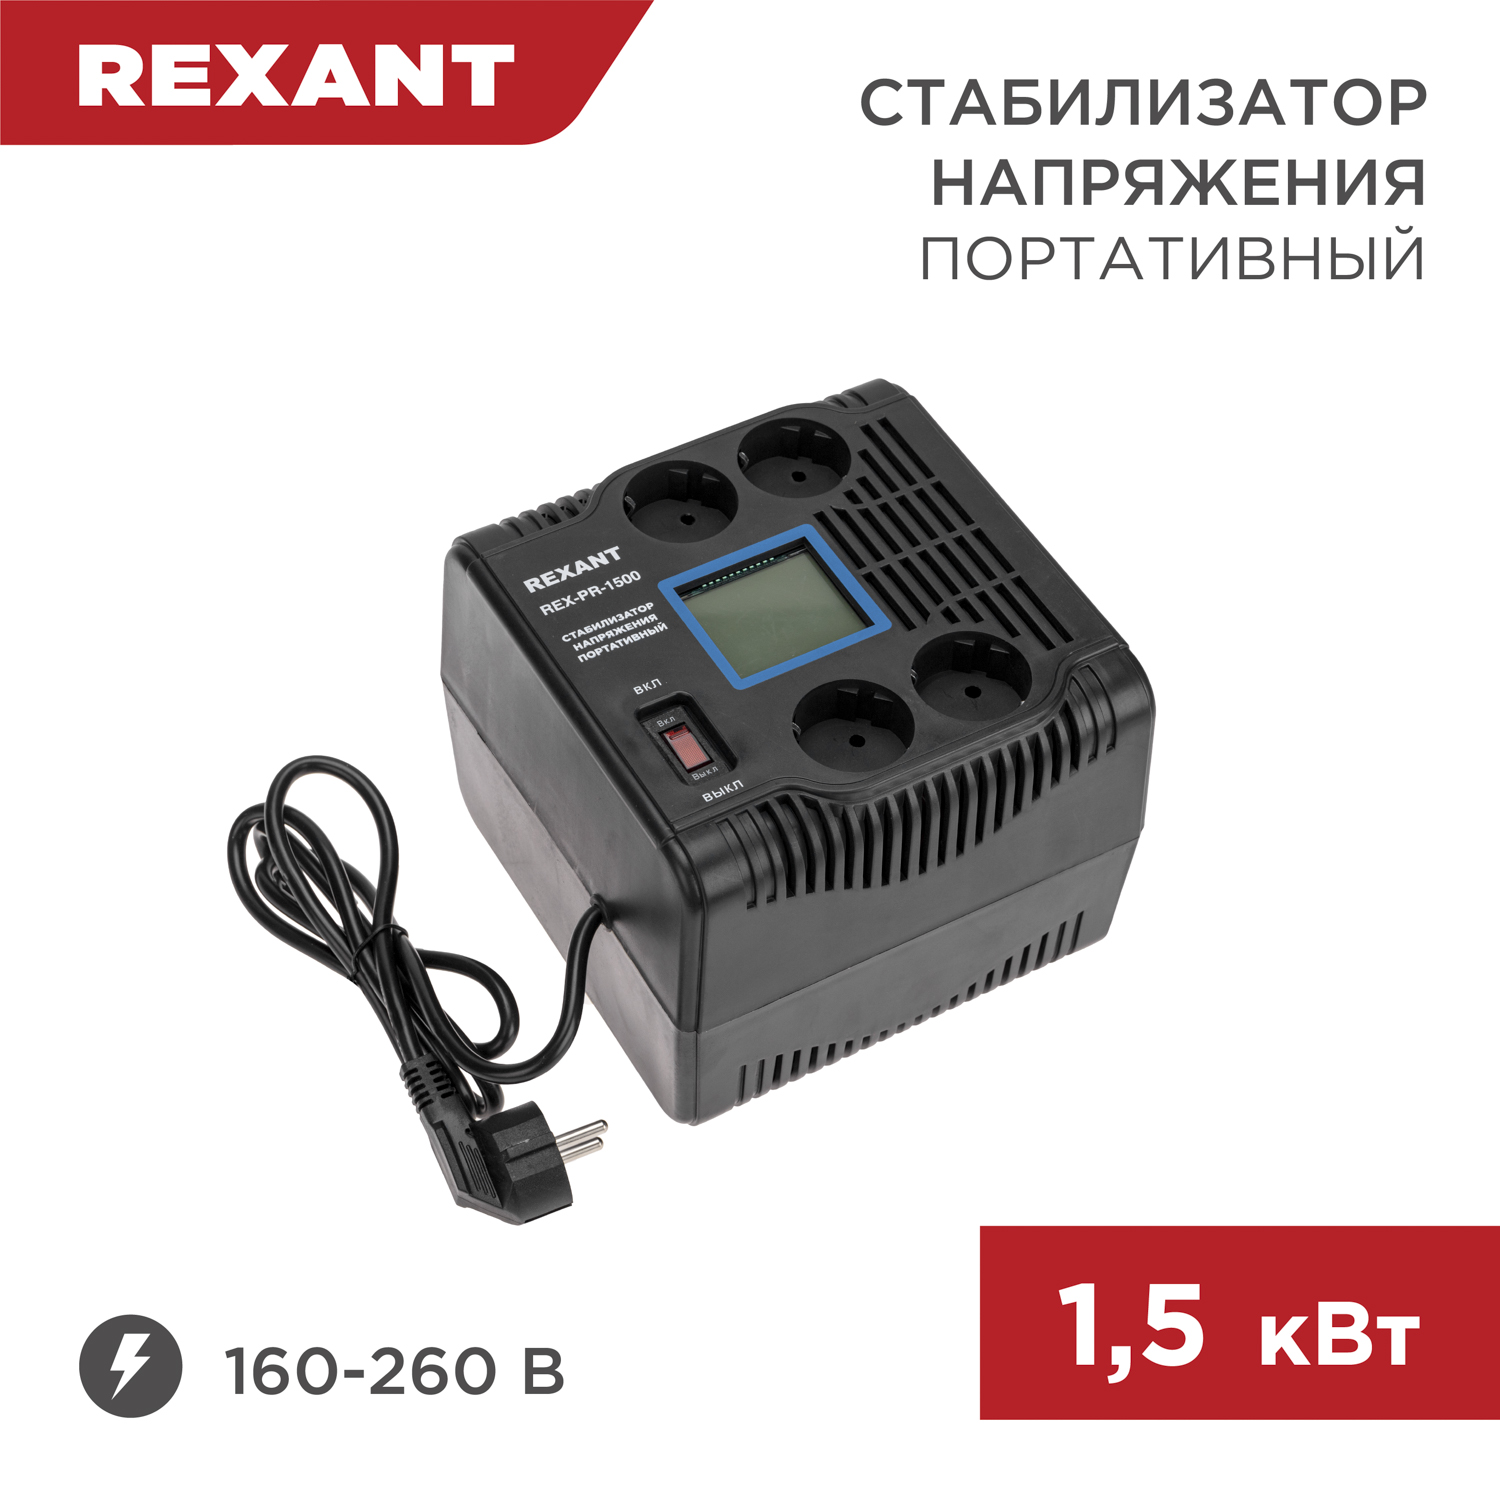 Стабилизатор напряжения портативный REXANT REX-PR-1500 11-5031 однофазный стабилизатор напряжения вольт engineering